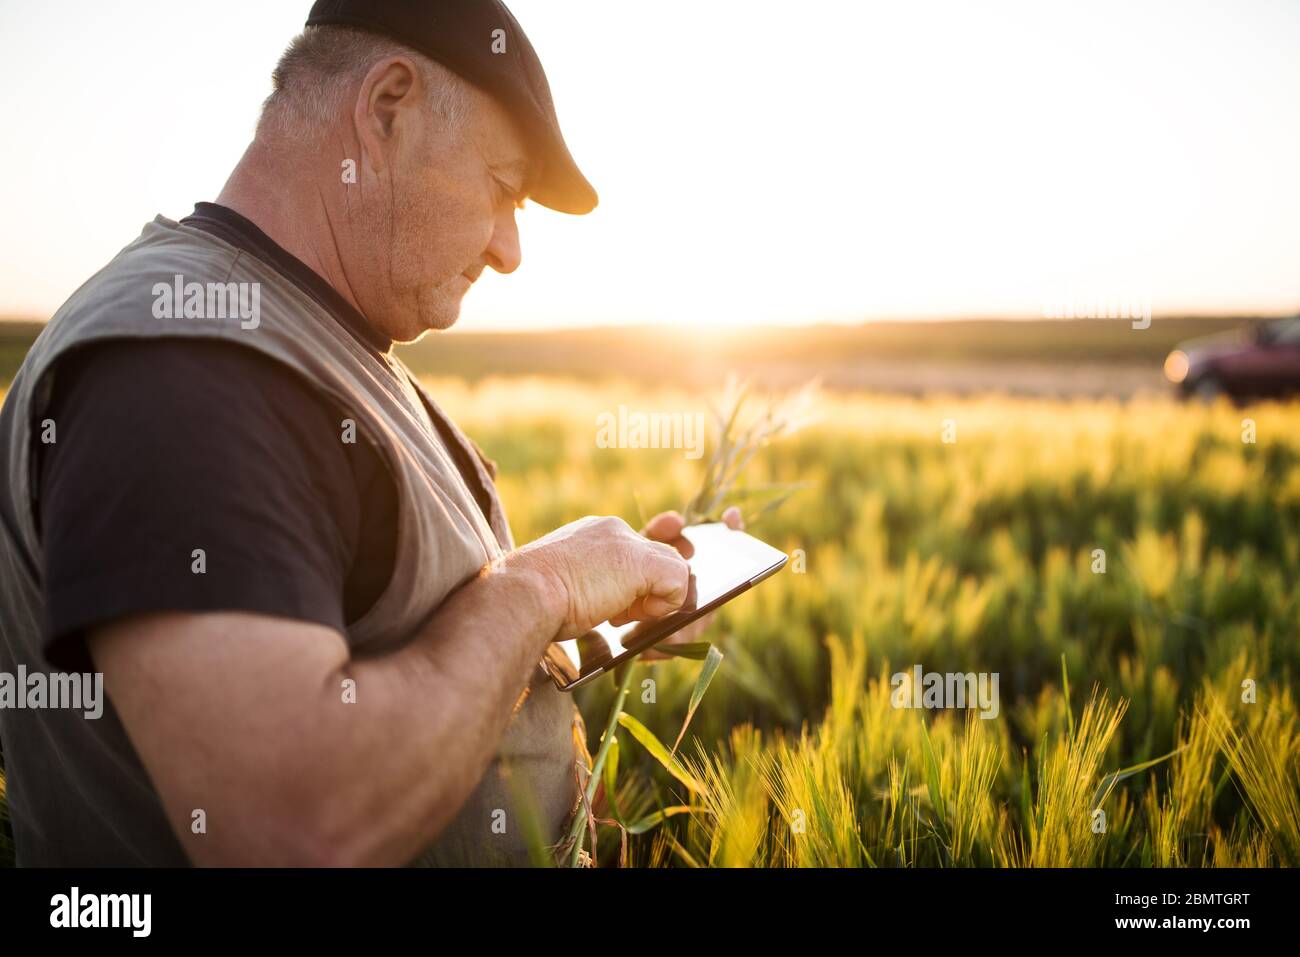 Agriculteur vérifiant la récolte dans un champ et utilisant une tablette. Concept agricole Banque D'Images